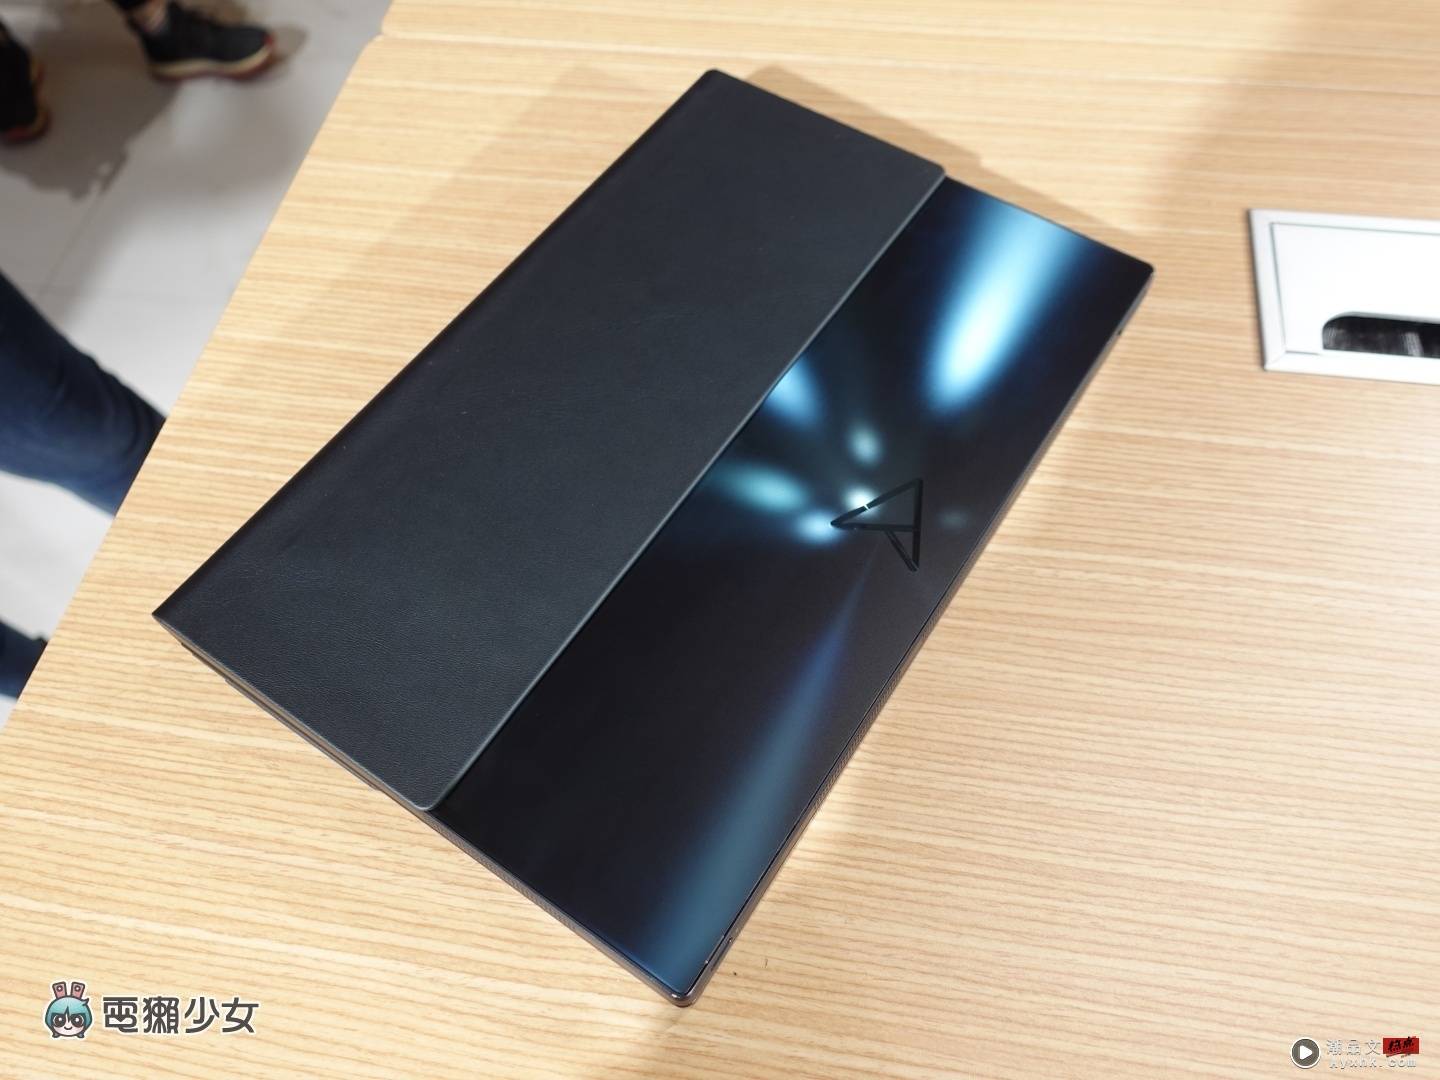 折叠手机不够看！华硕发表 17 吋折叠式笔电‘ Zenbook 17 Fold OLED ’ 数码科技 图3张